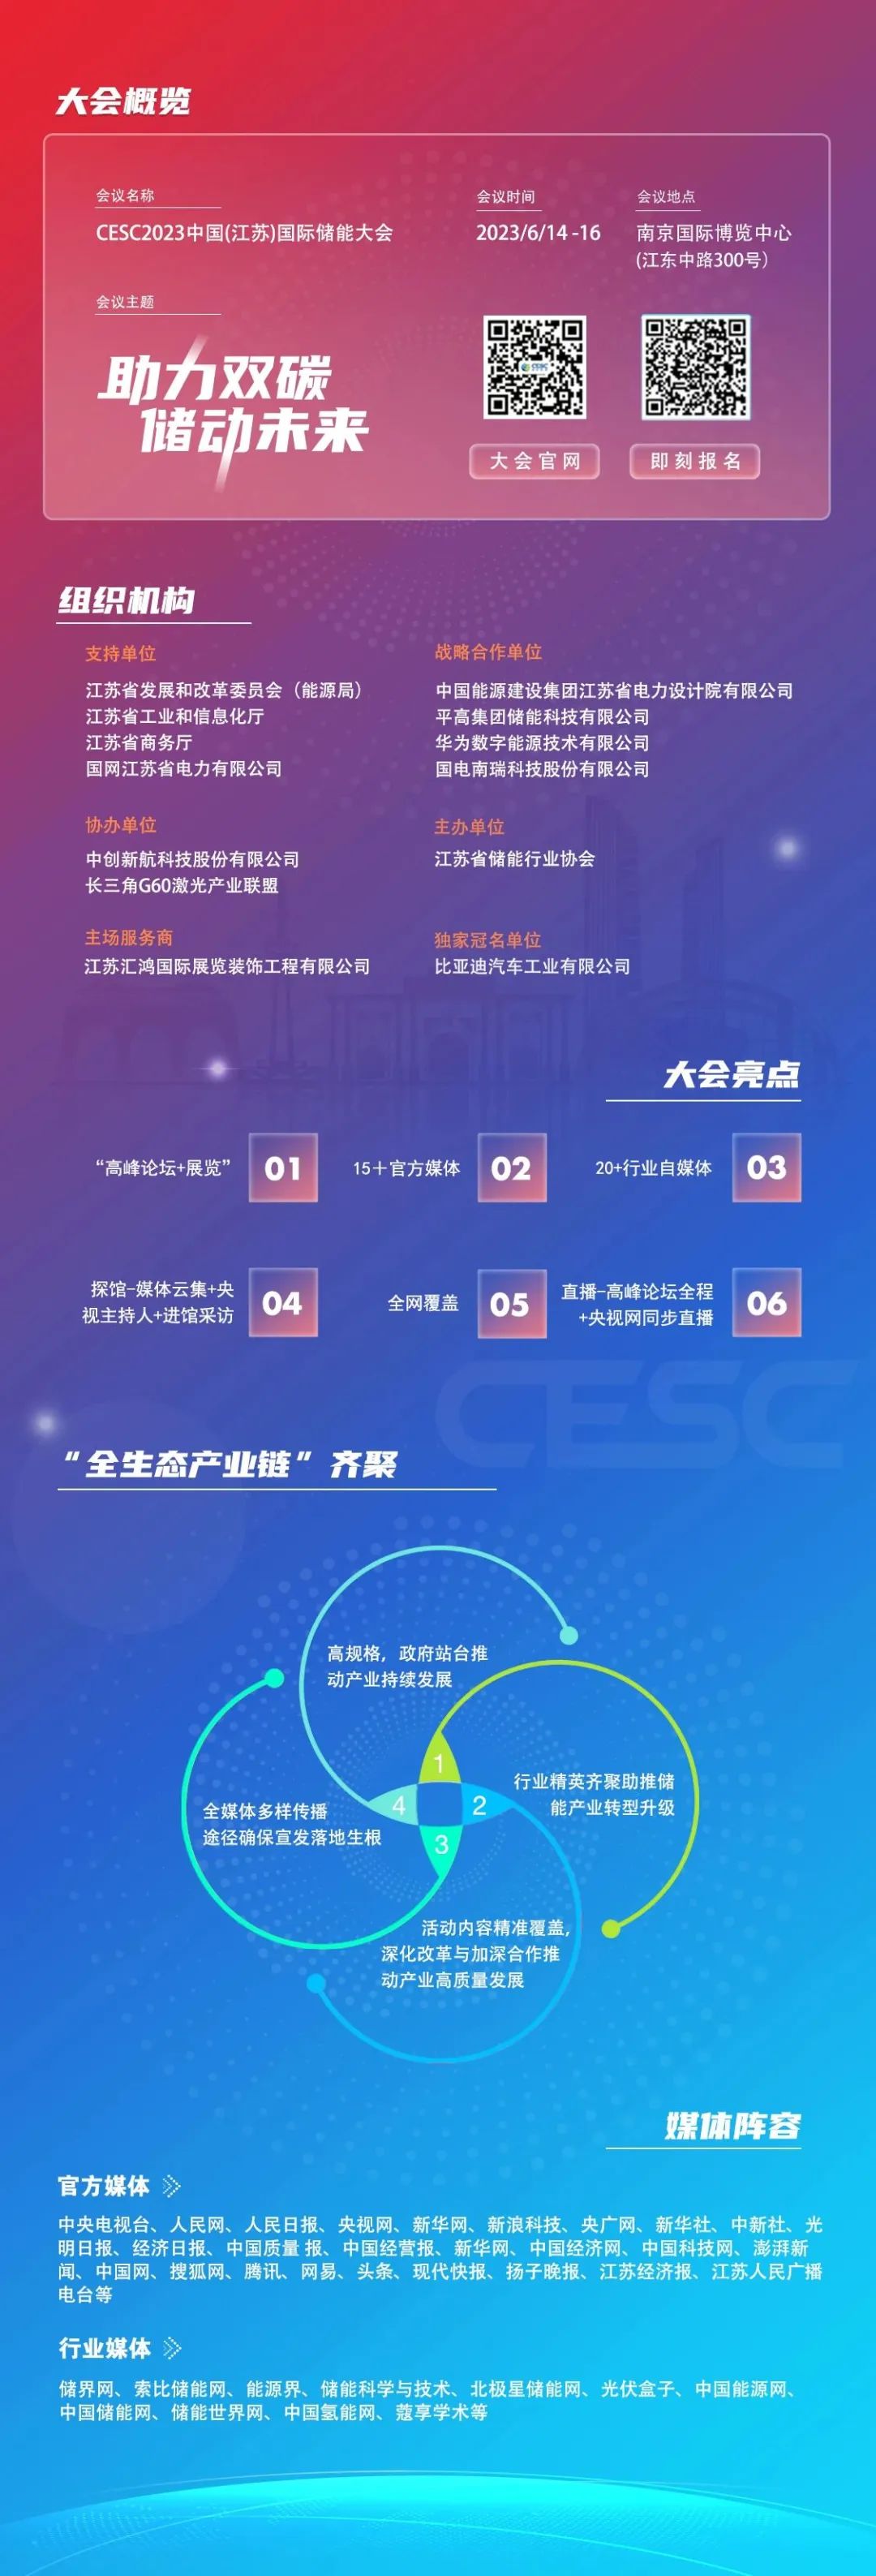 【官方】CESC中国国际储能大会